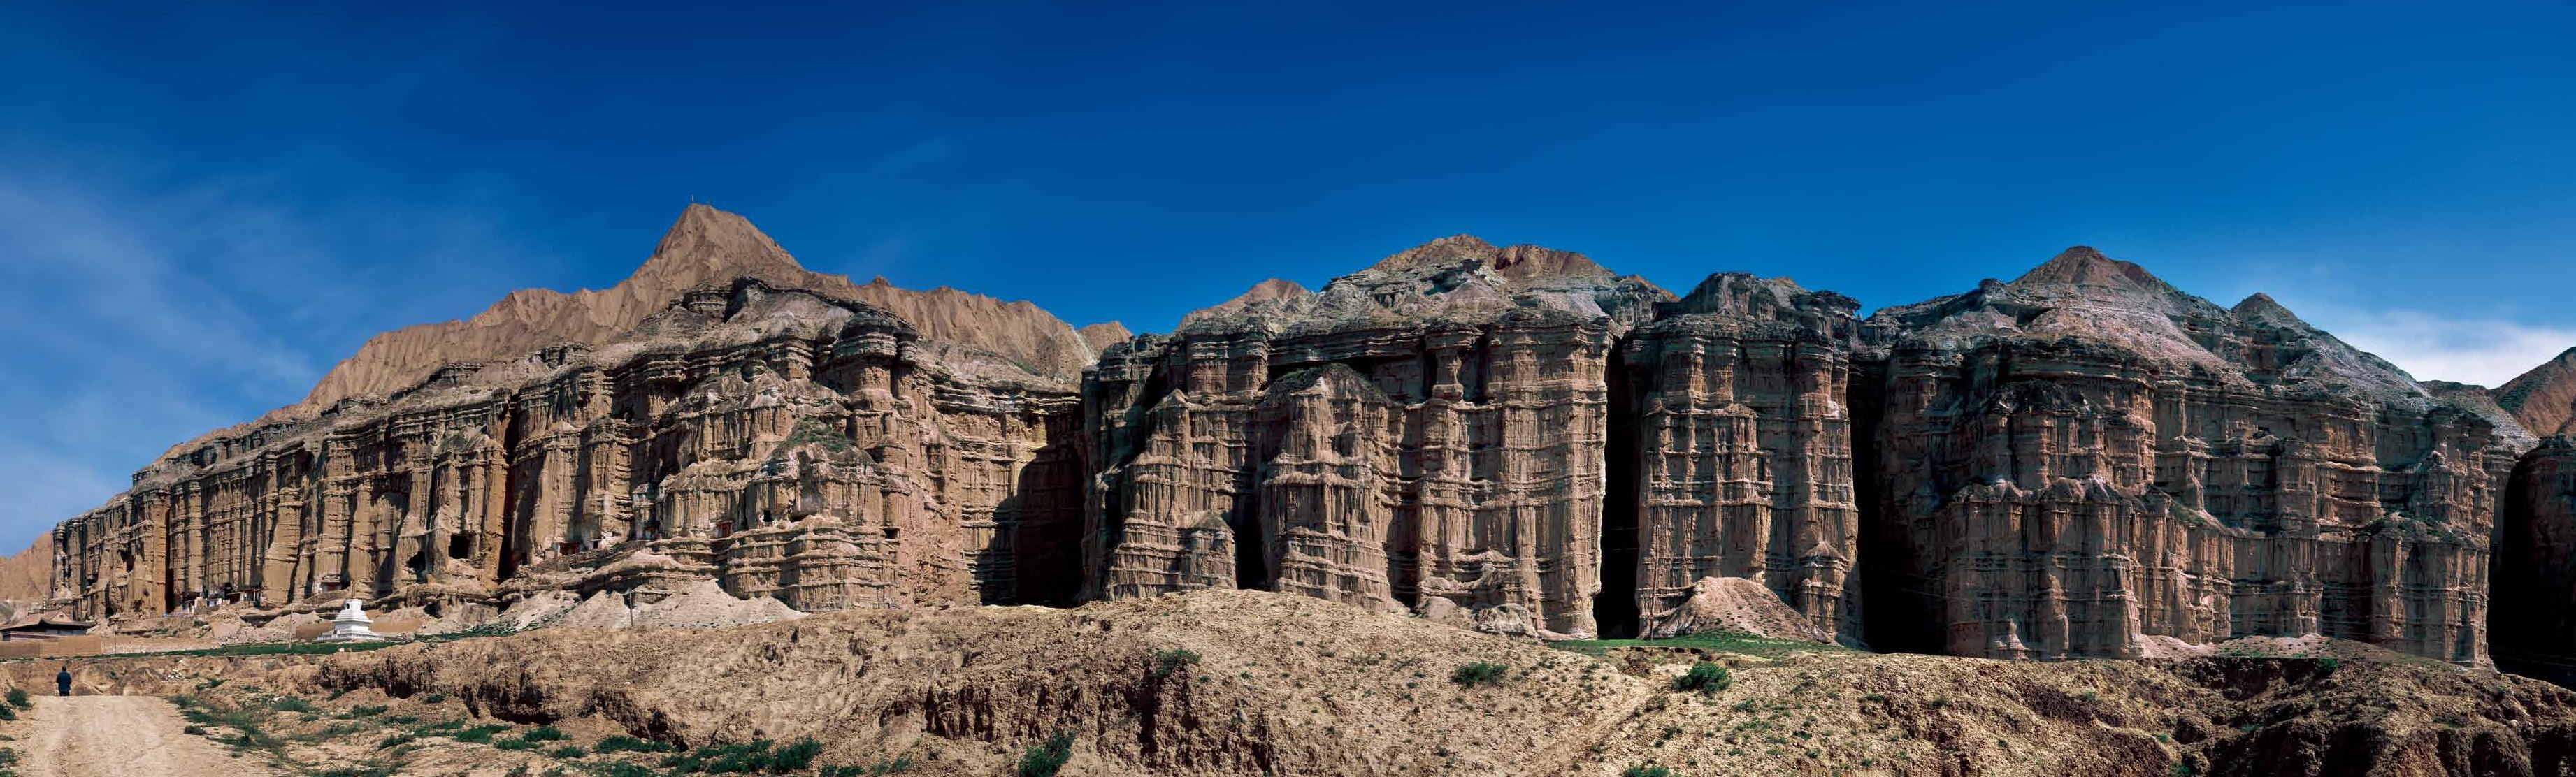 青海省黃南州尖扎縣城有一片陡直的“金剛崖”，山崖由第三紀岩系組成，長約800米，寧瑪派的智合寺坐落其上。